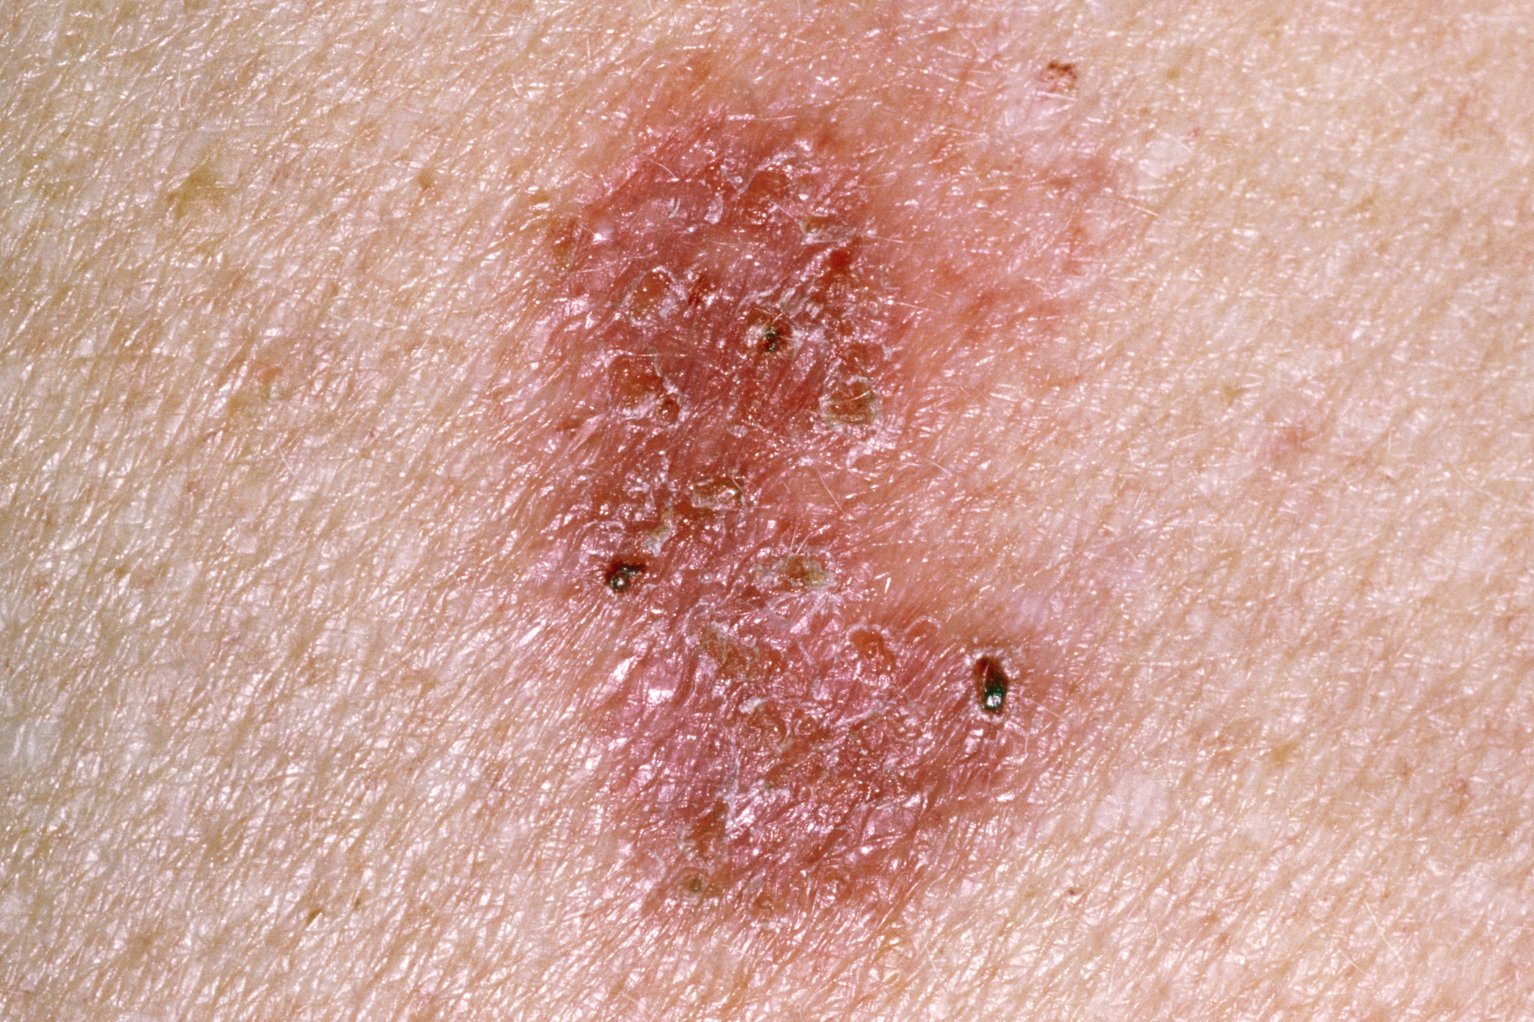 Câncer de pele nÃo-melanoma